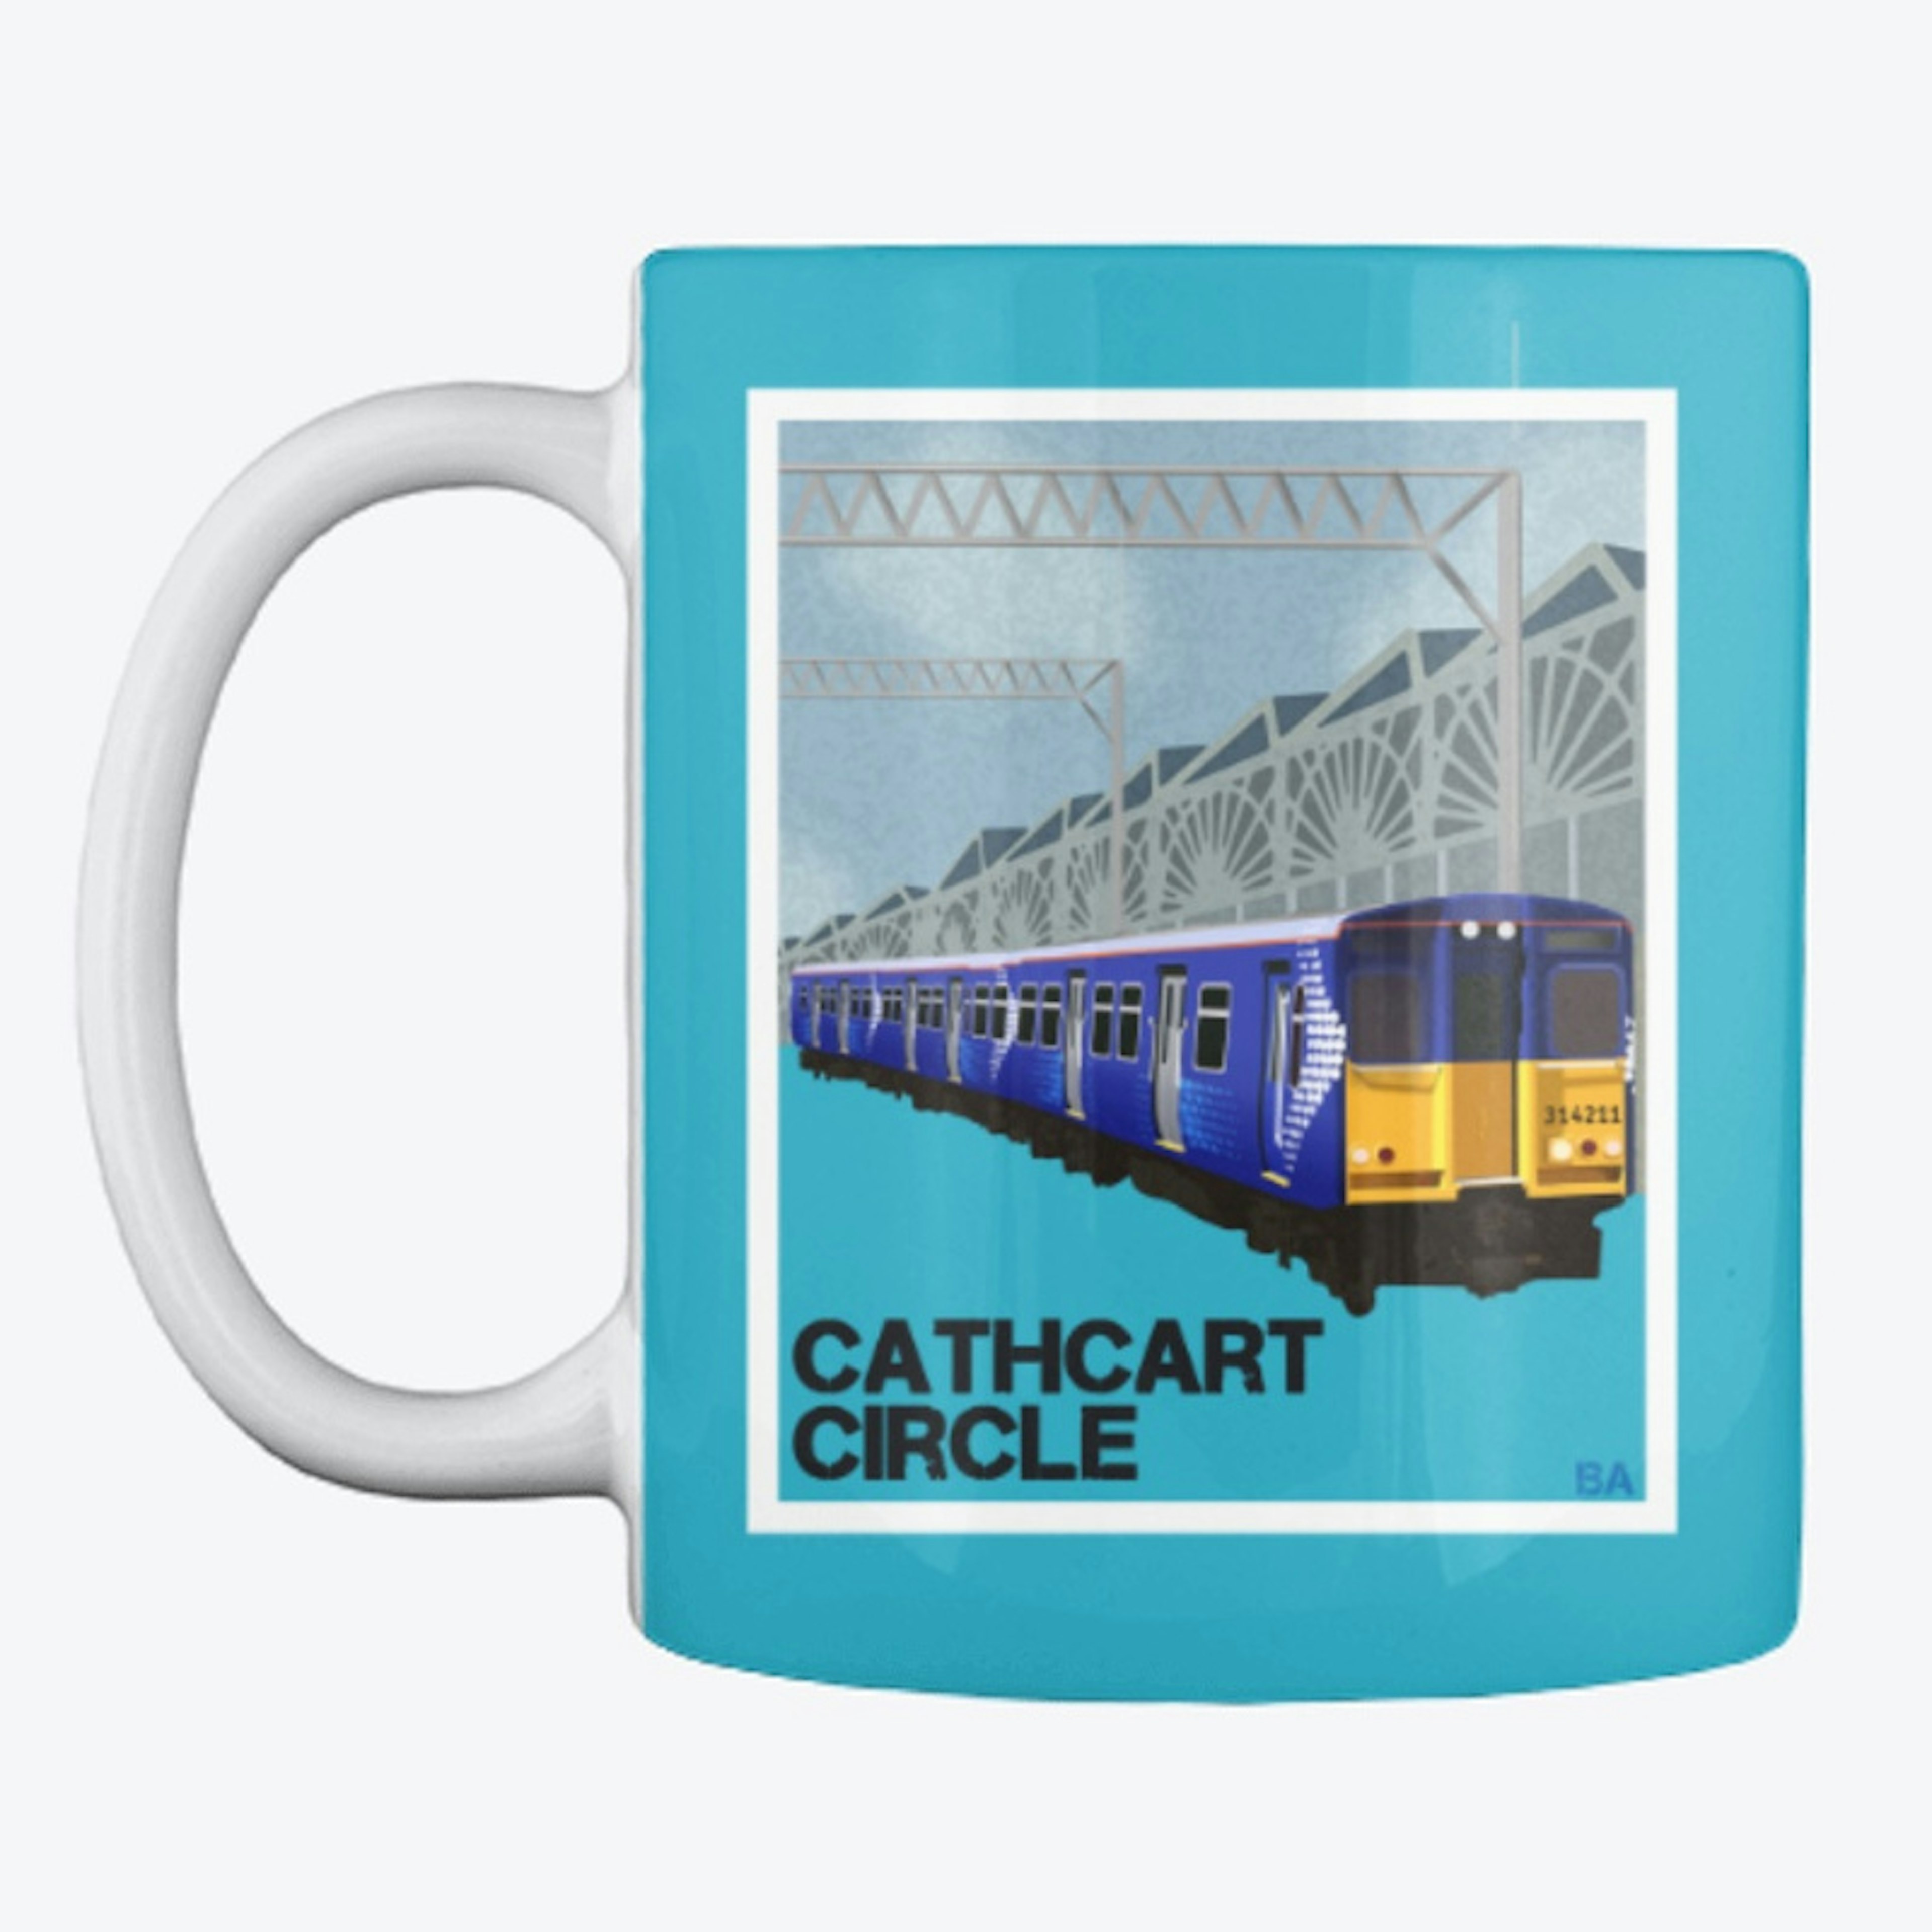 Cathcart Circle Mug